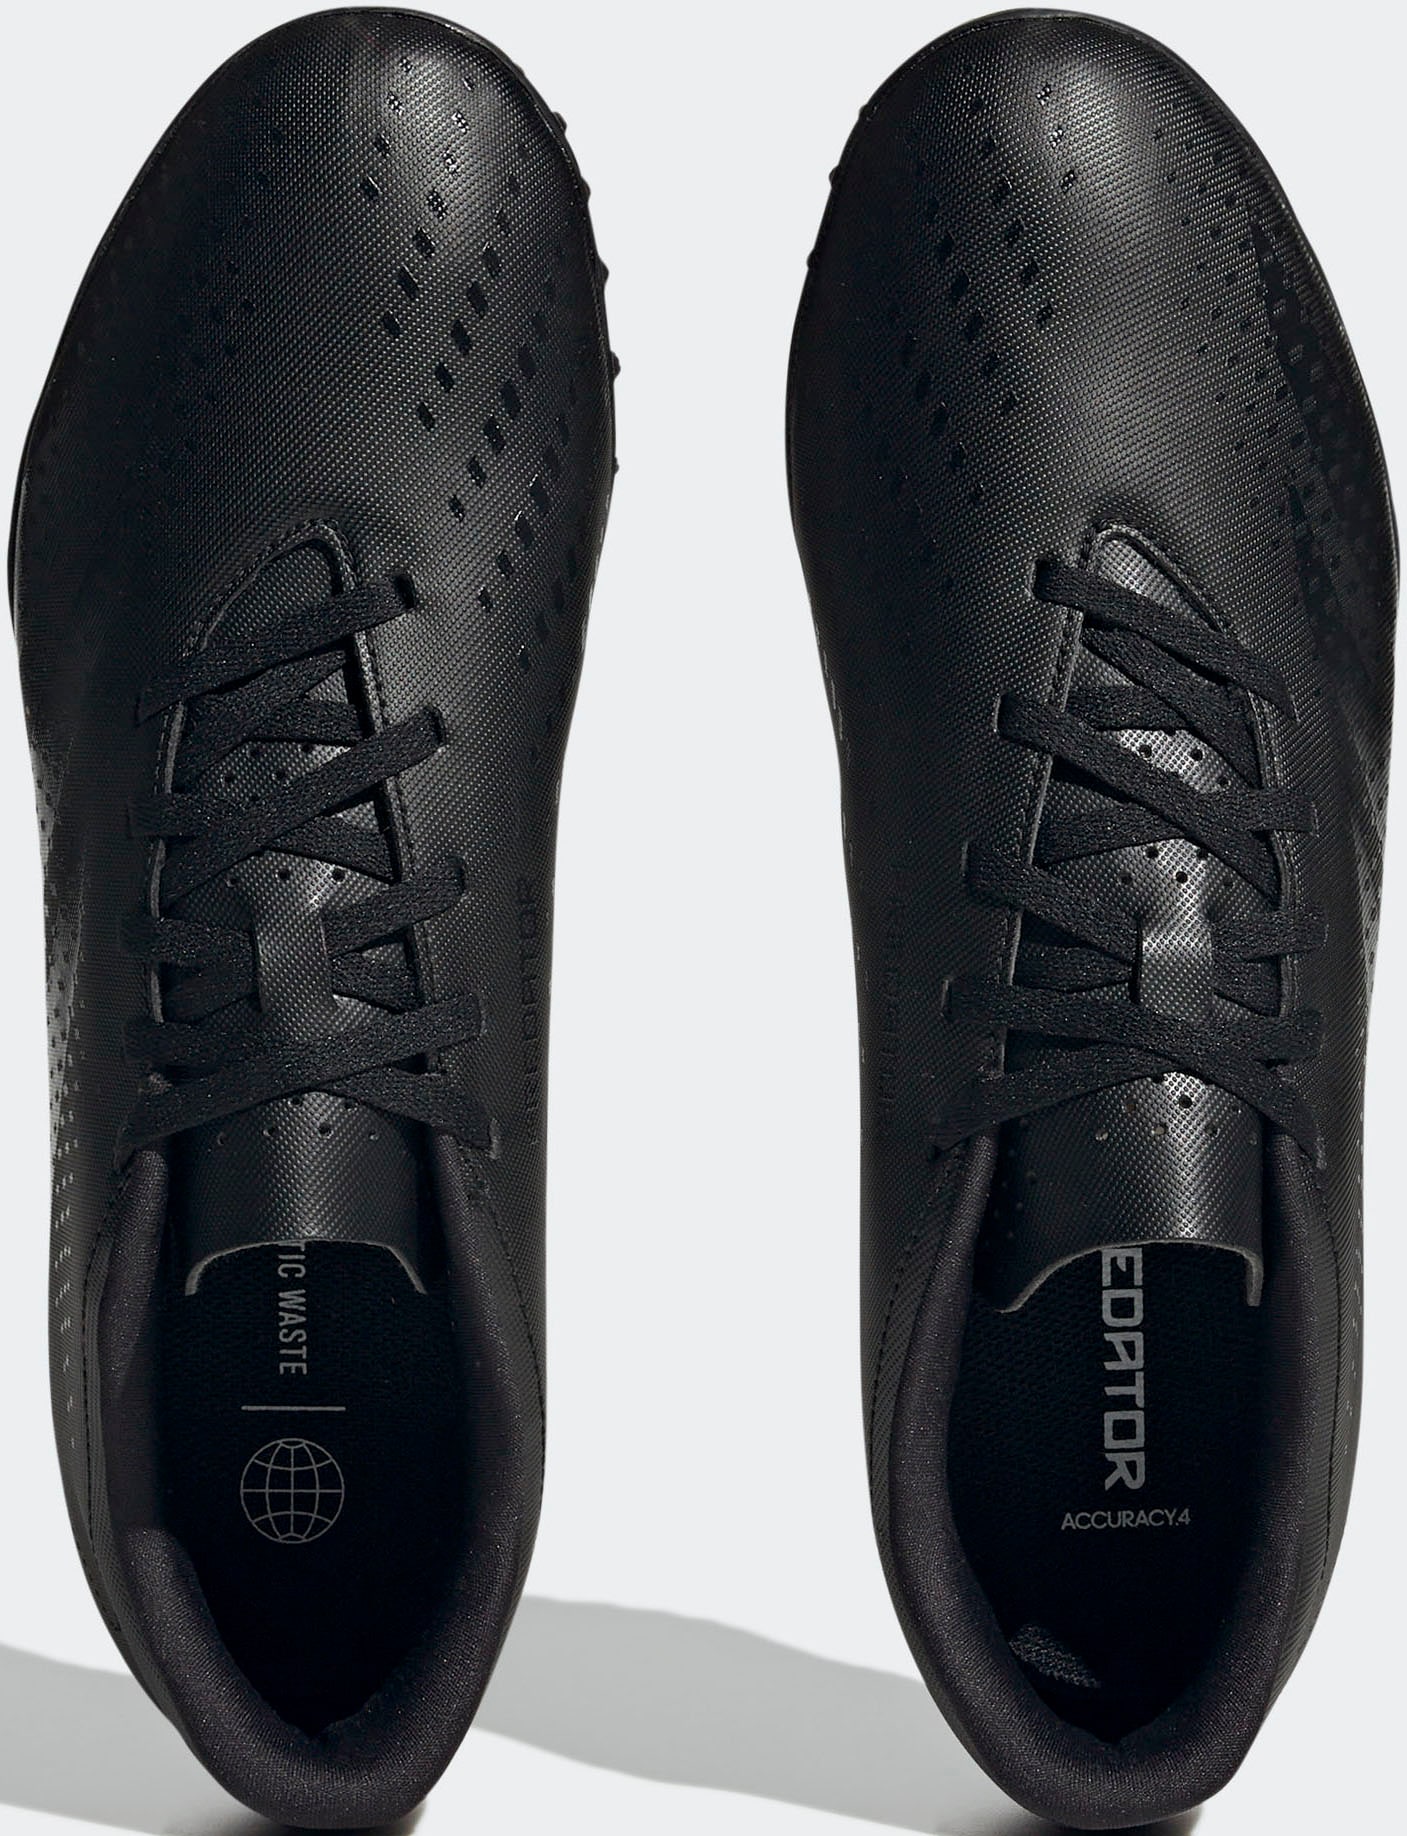 »PREDATOR TF« ACCURACY.4 | zu Preisen adidas Fussballschuh Jelmoli-Versand Performance günstigen shoppen